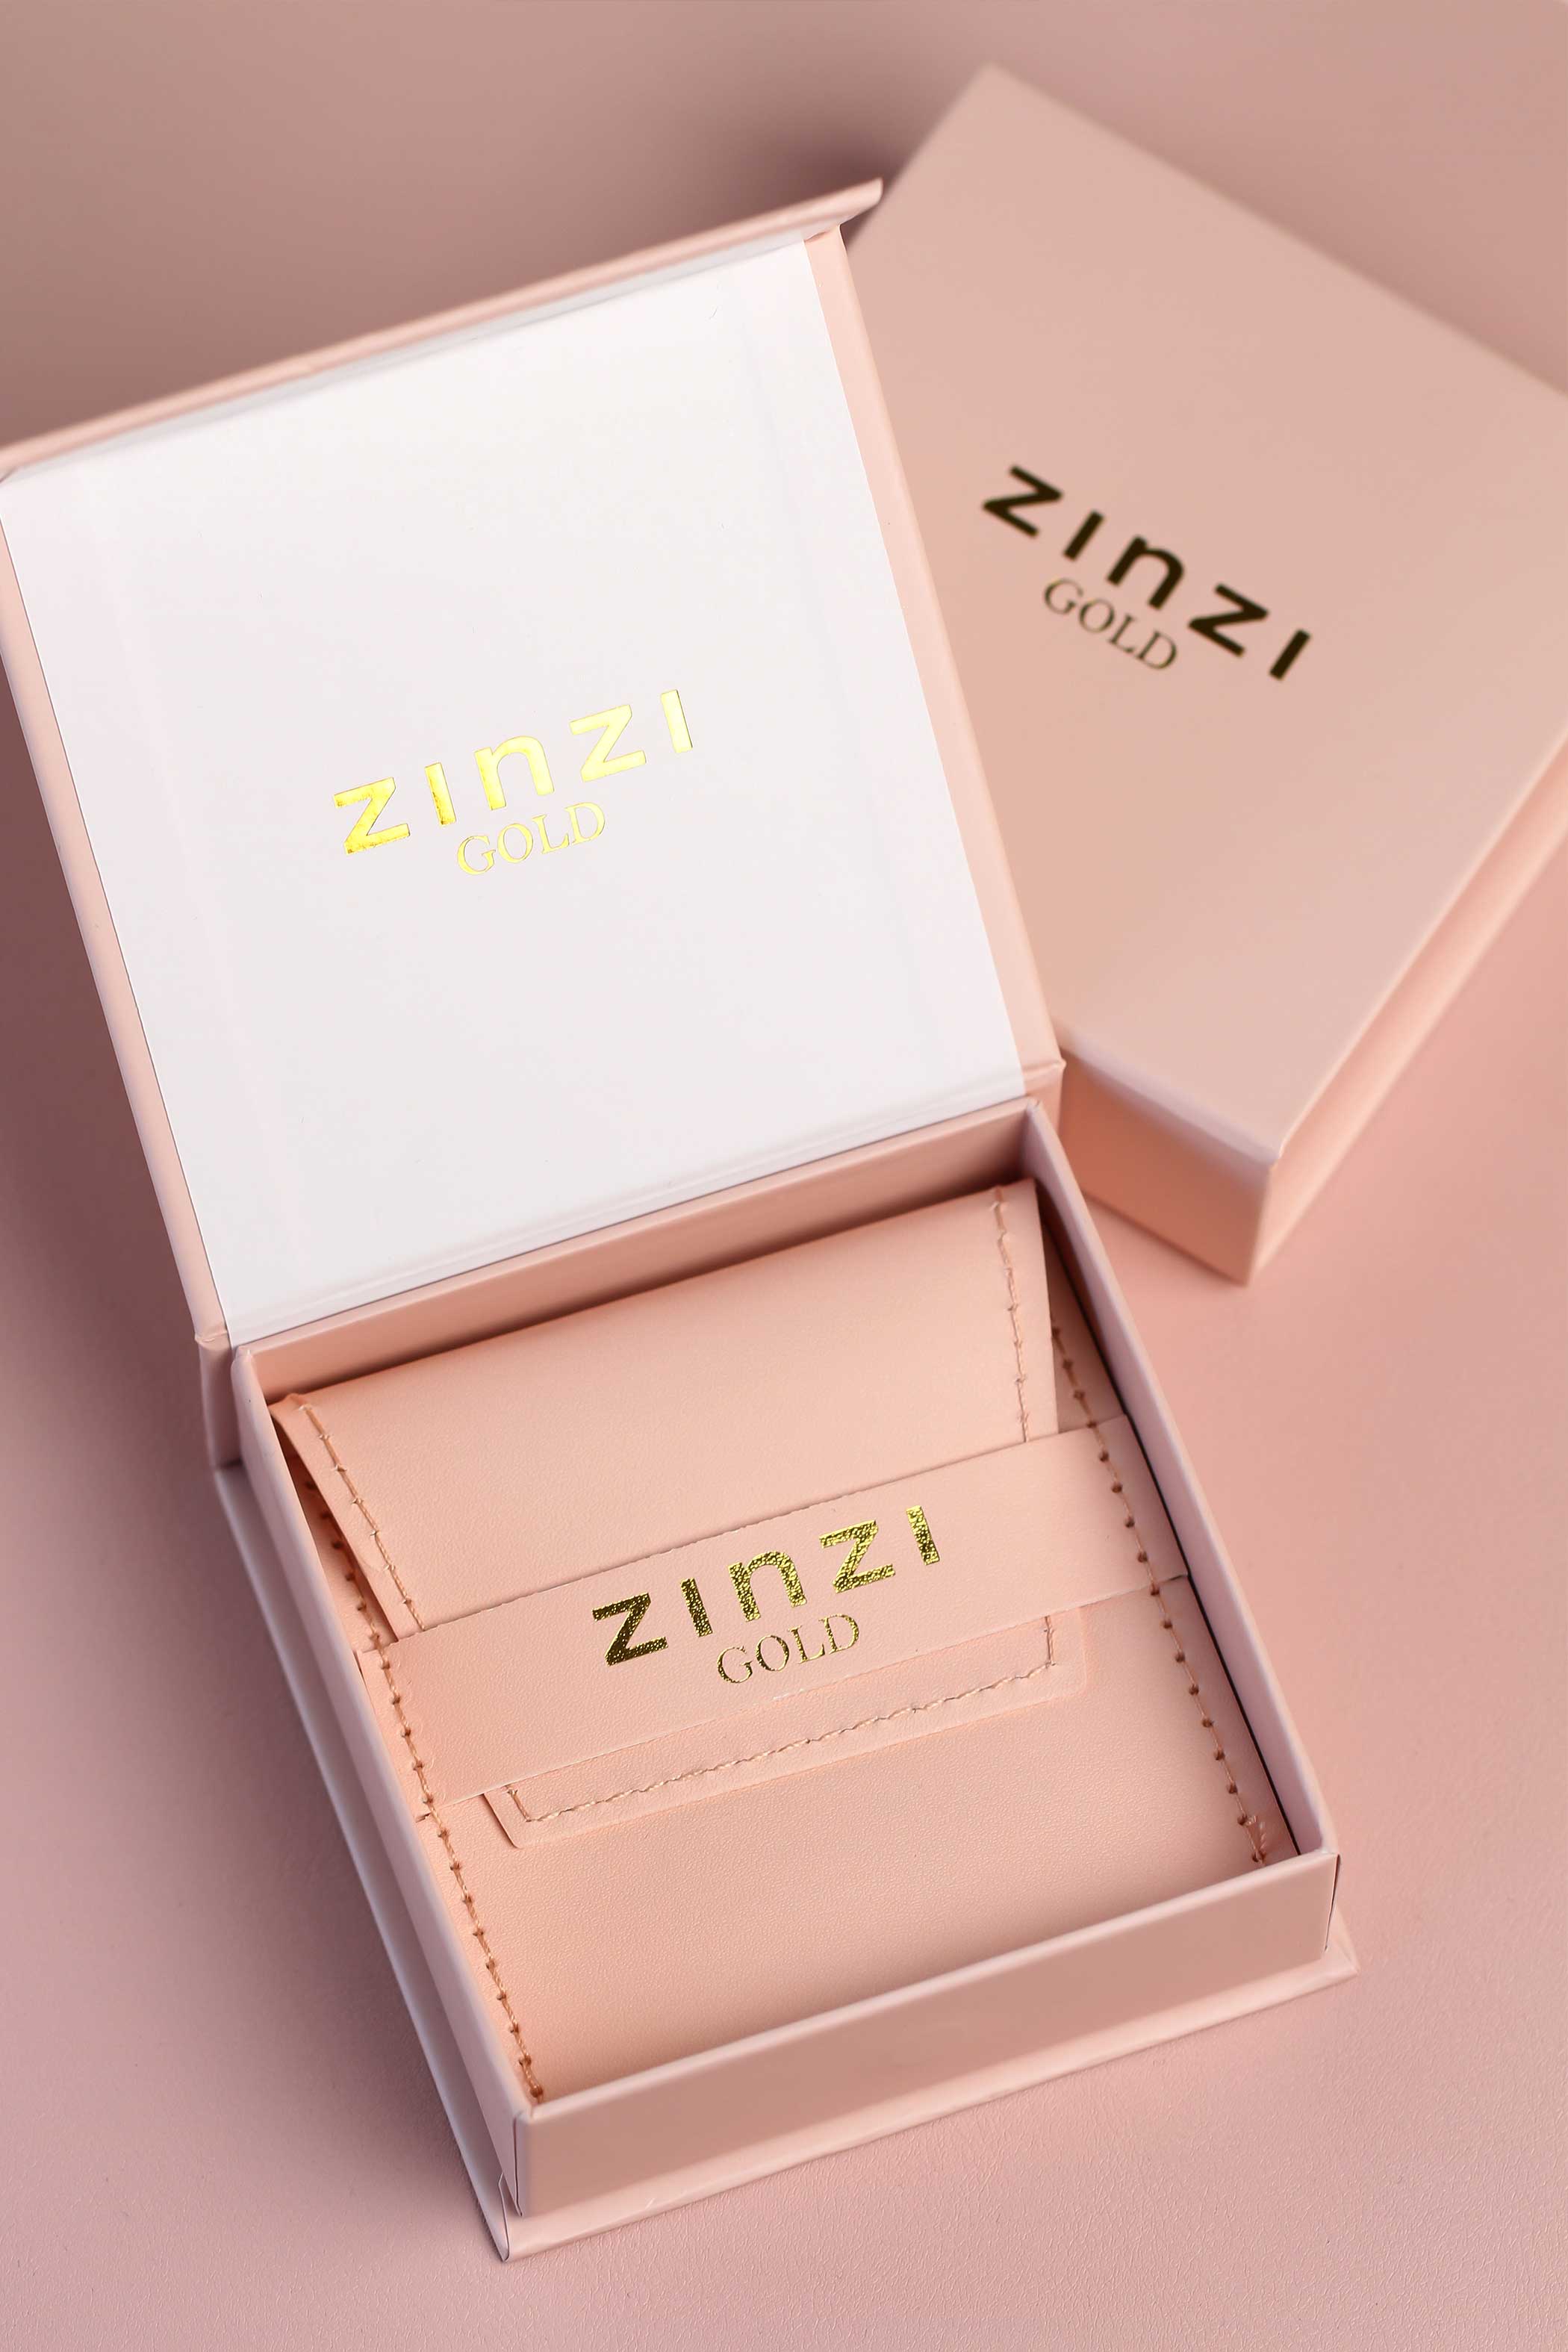 ZINZI 14K Gold Ring Beads White Zirconias ZGR309